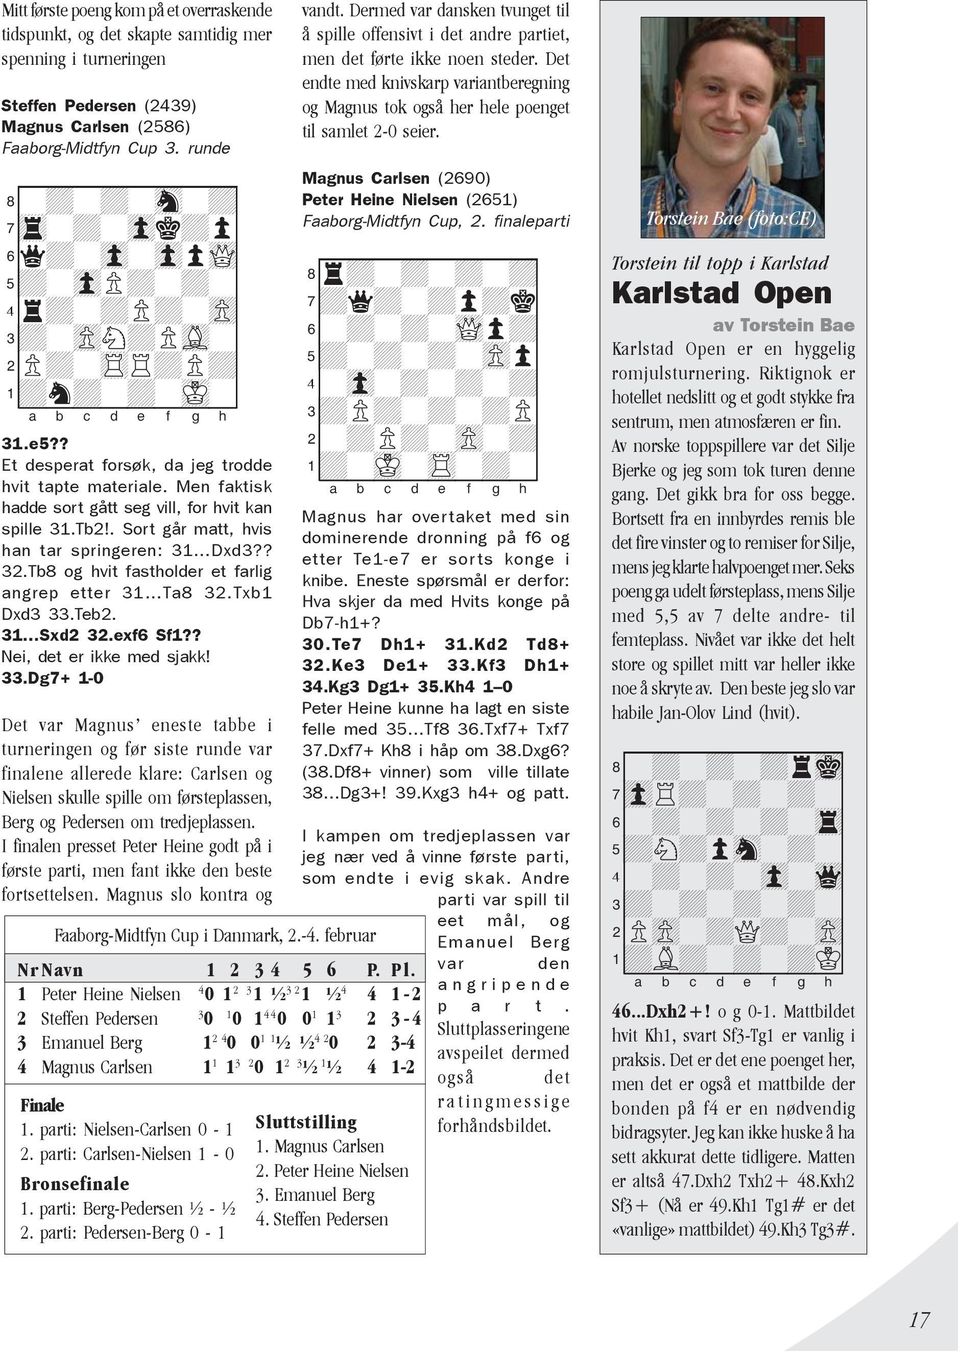 Men faktisk hadde sort gått seg vill, for hvit kan spille 31.Tb2!. Sort går matt, hvis han tar springeren: 31 Dxd3?? 32.Tb8 og hvit fastholder et farlig angrep etter 31 Ta8 32.Txb1 Dxd3 33.Teb2.